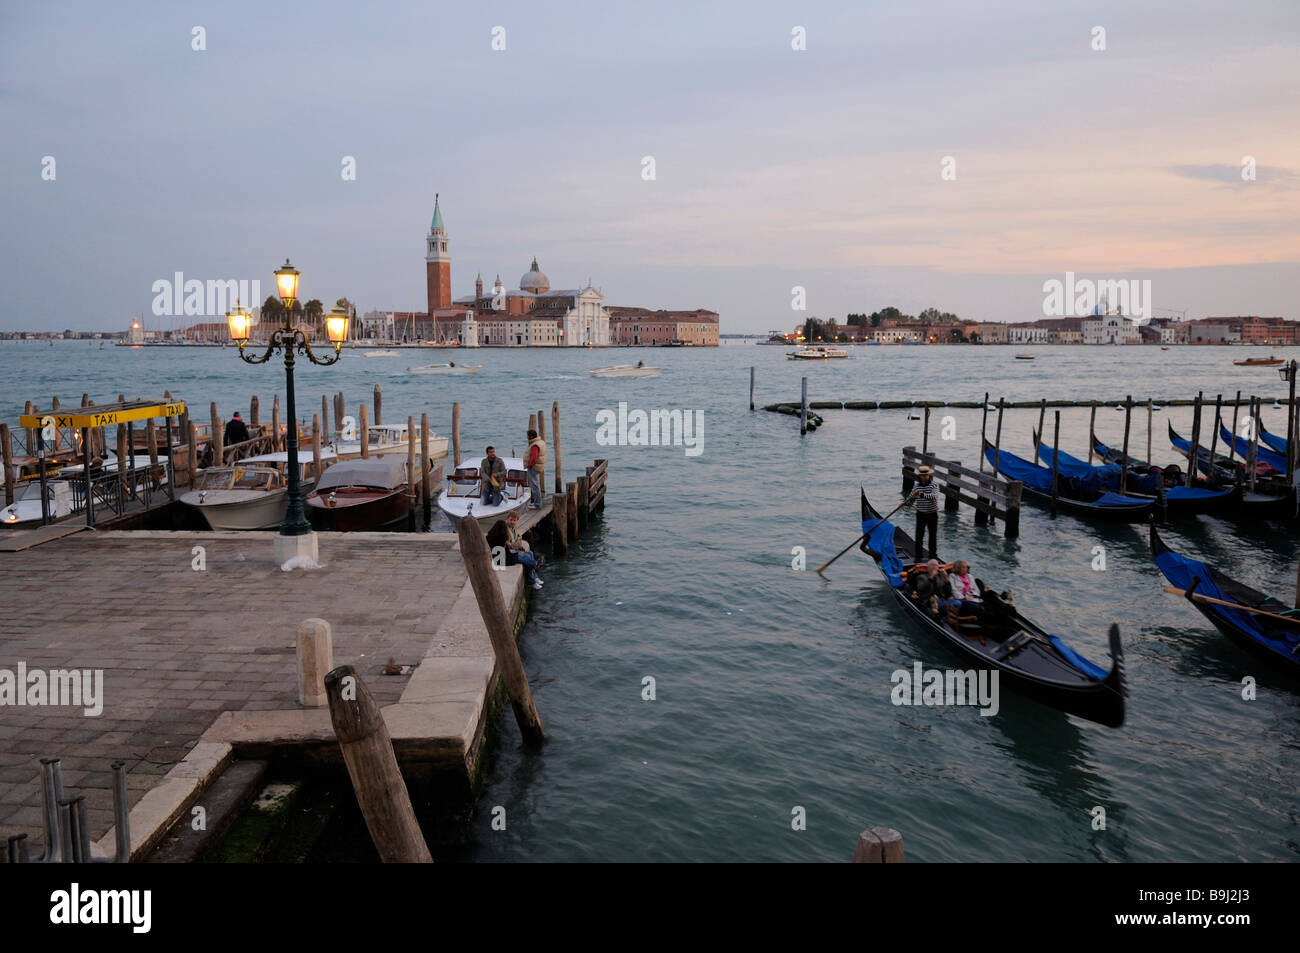 View of San Giorgio Maggiore Island, Venice, Italy, Europe Stock Photo